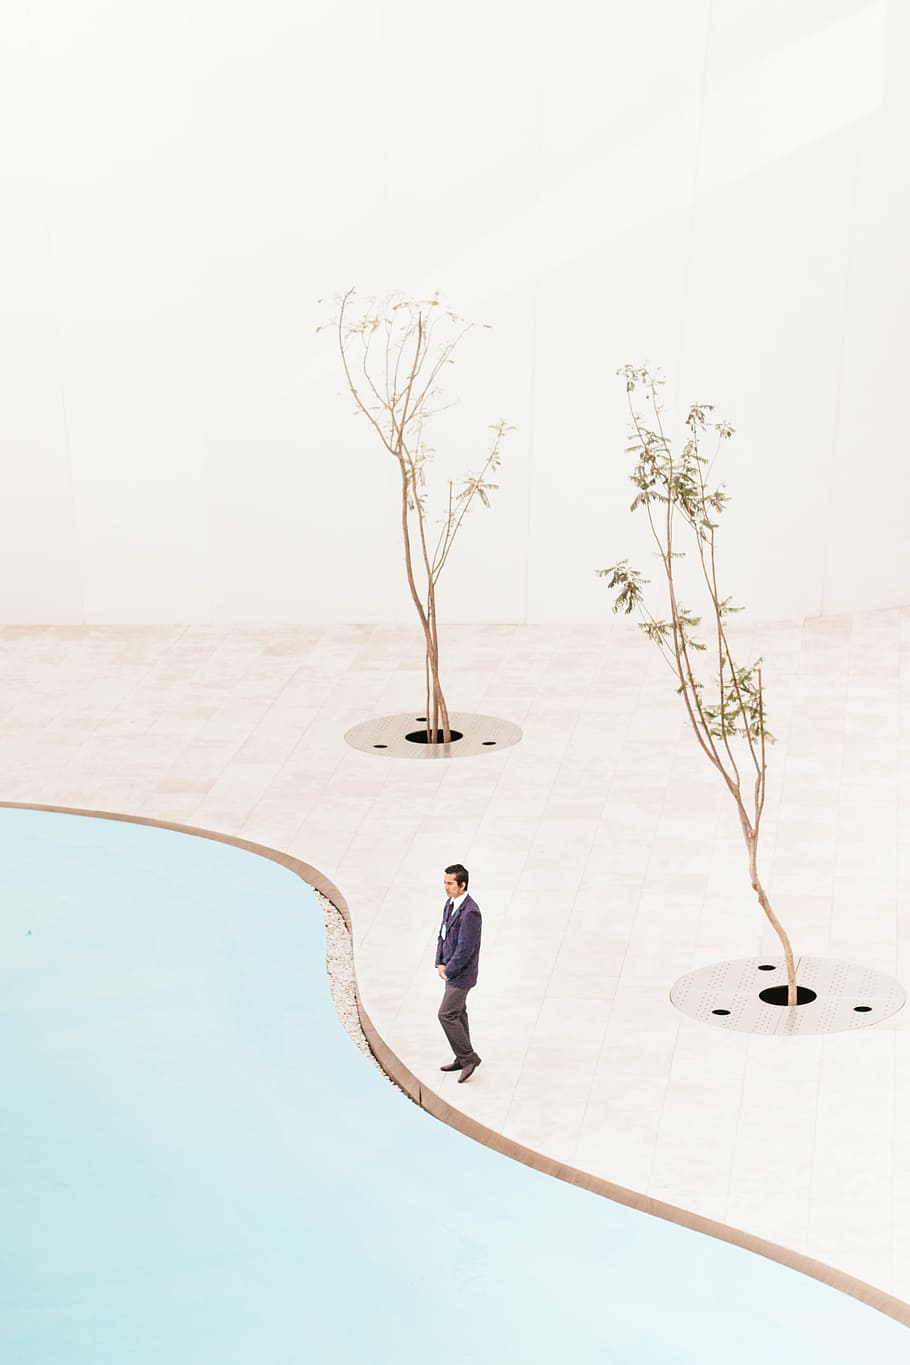 男, 立っている, 木, デジタル, 壁紙, 人々, 一人で, 植物, 自然, アウトドア